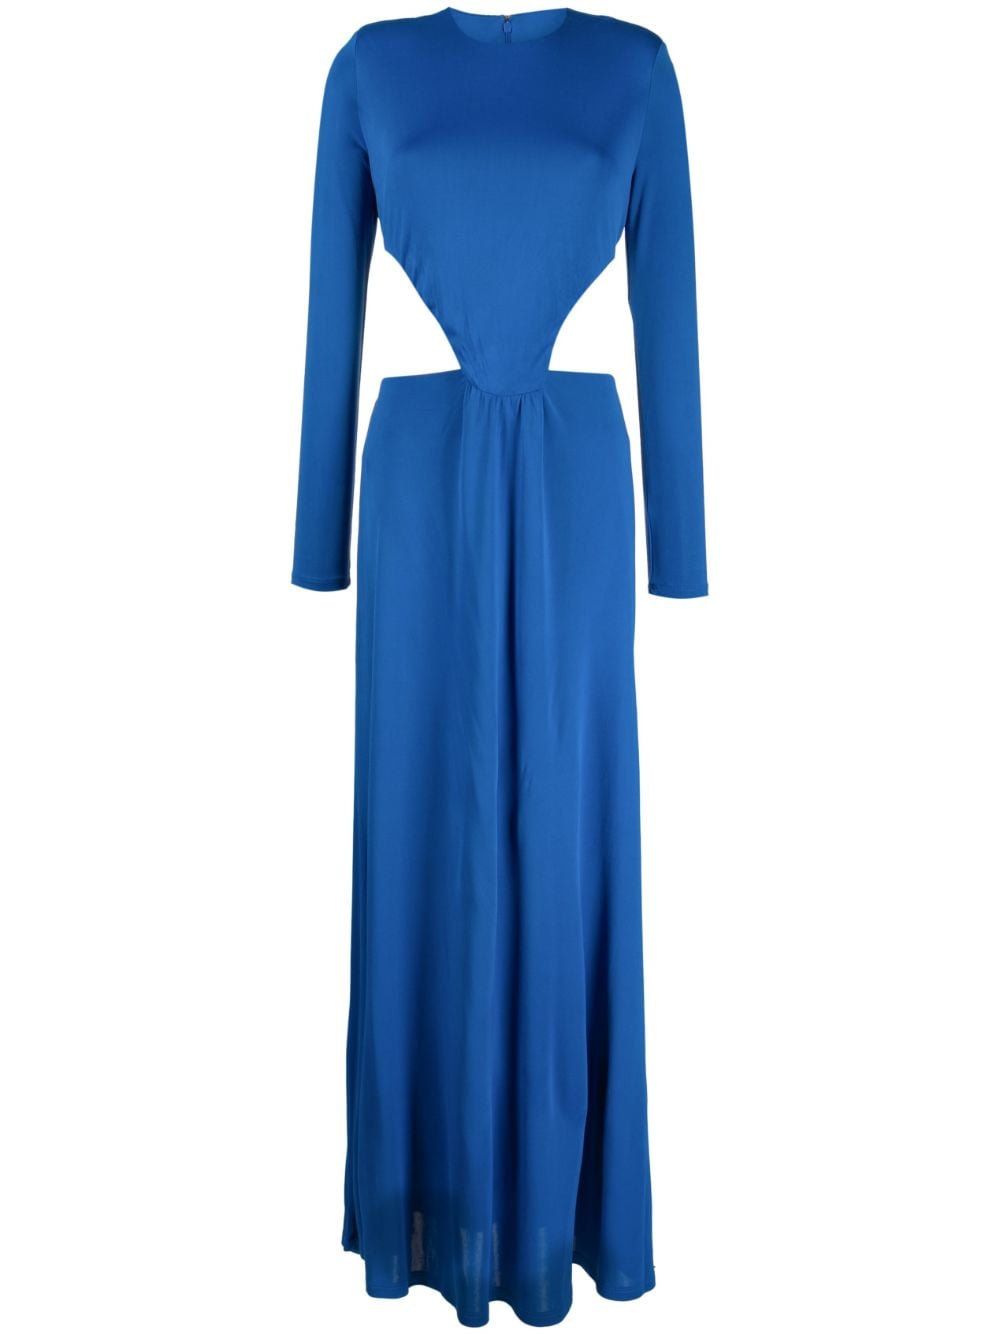 FARM Rio knotted cut-out maxi dress - Blue von FARM Rio